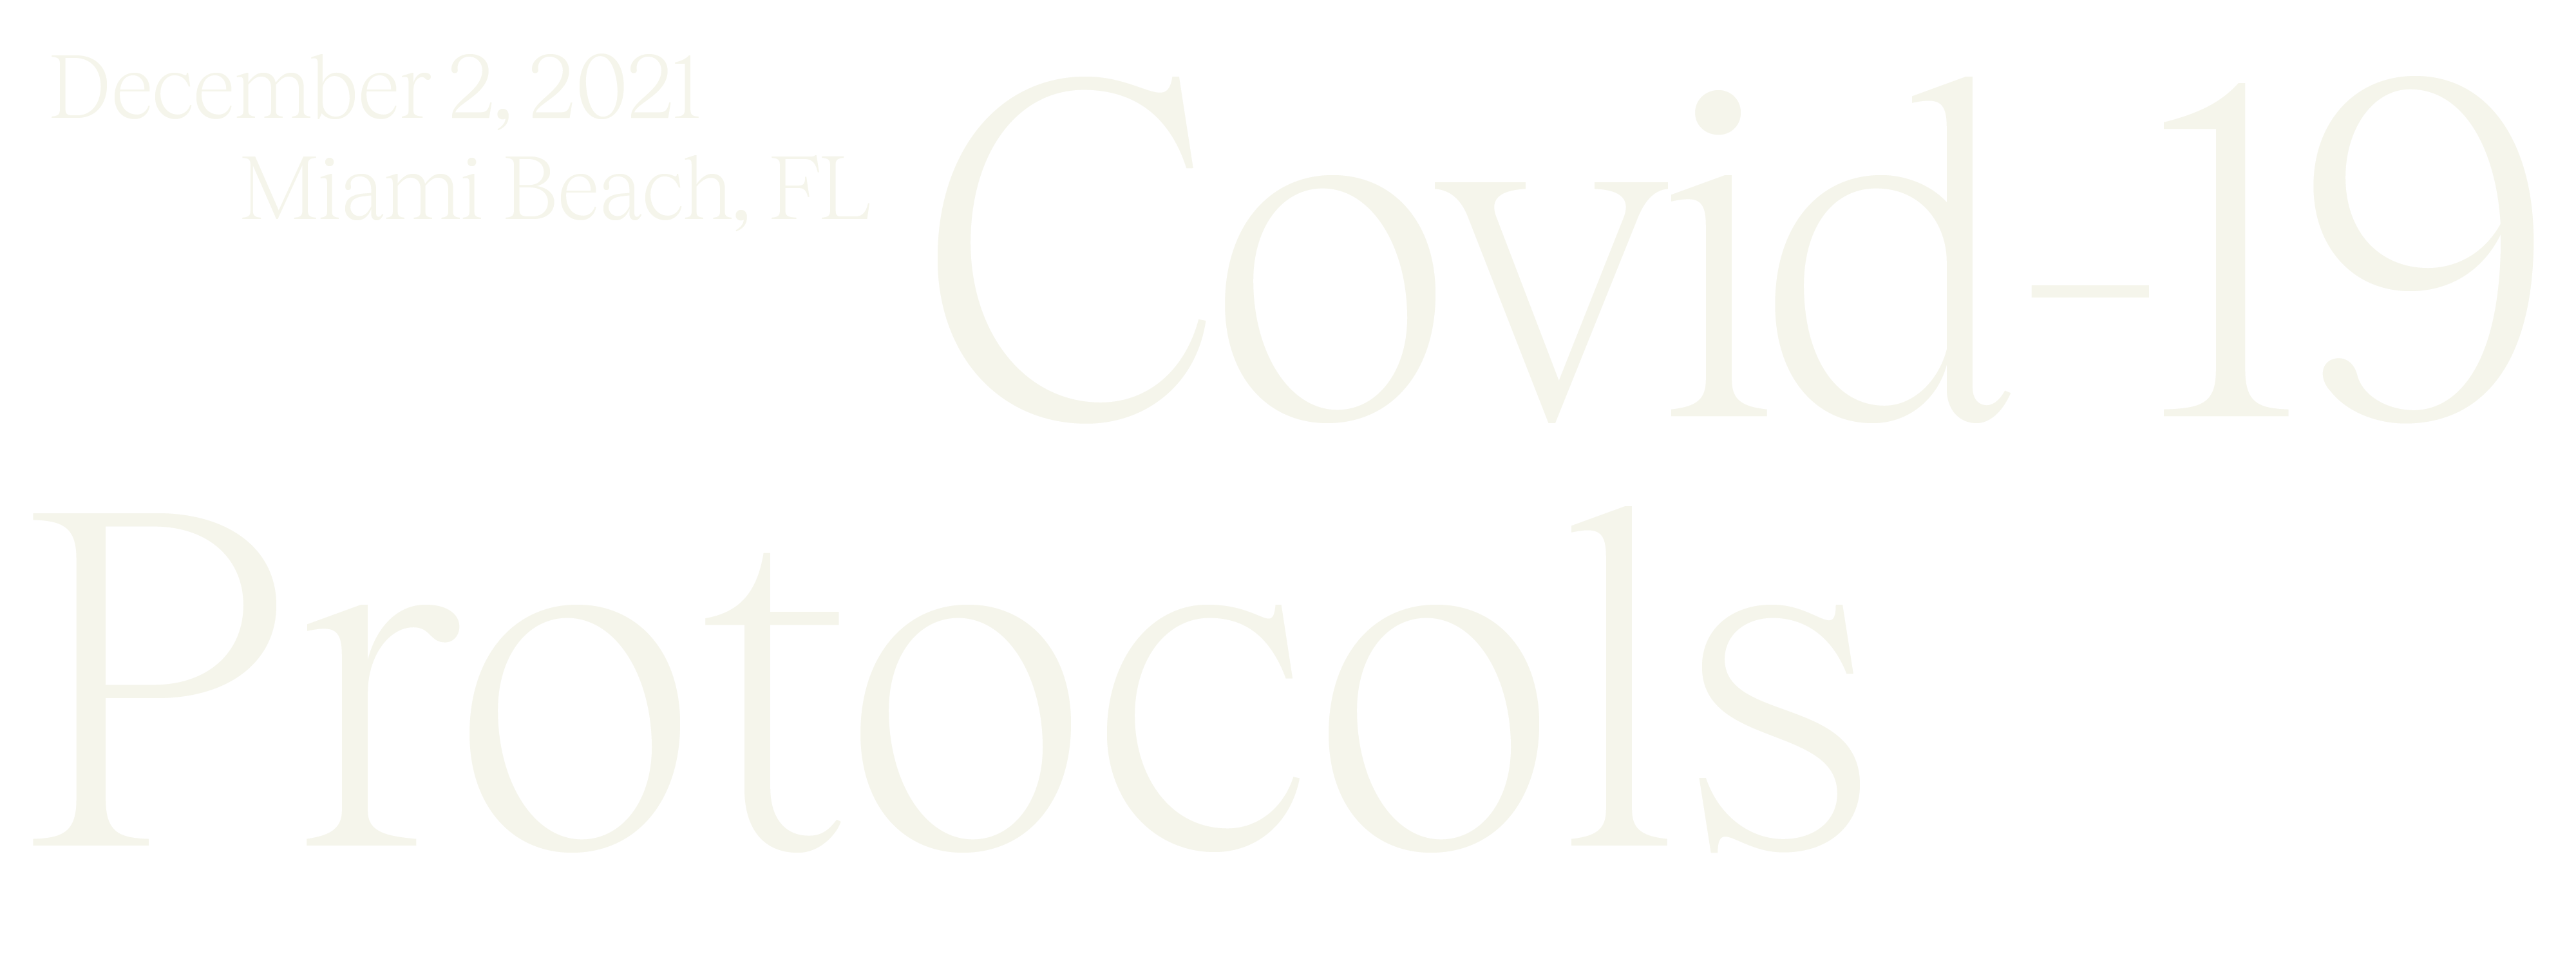 Covid19-Protocols